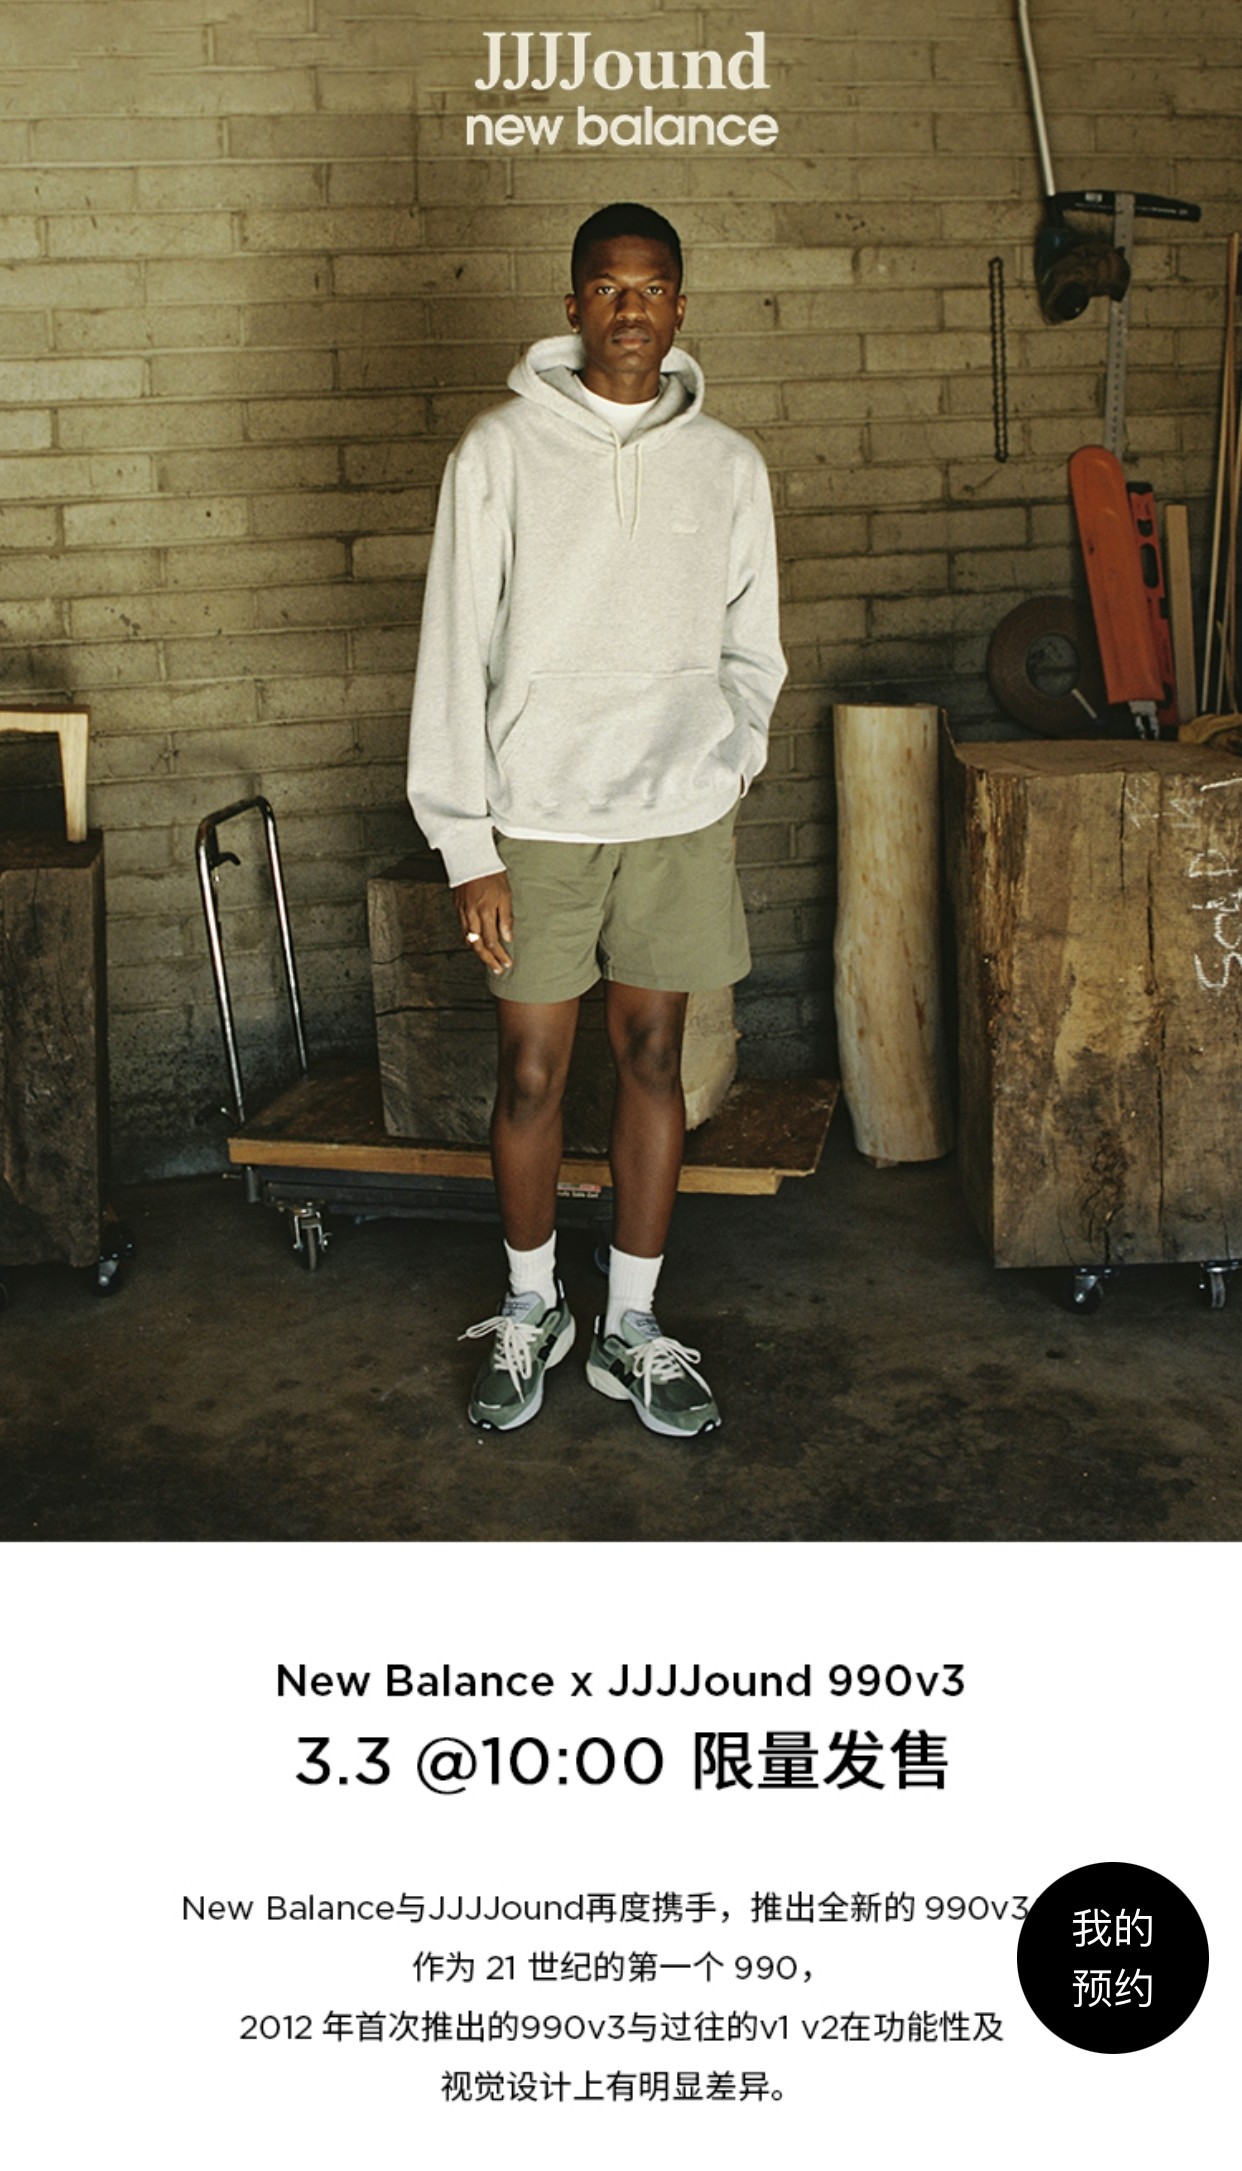 JJJJound,New Balance 990v3  市价 6000+！NB x JJJJound 登记刚开启！